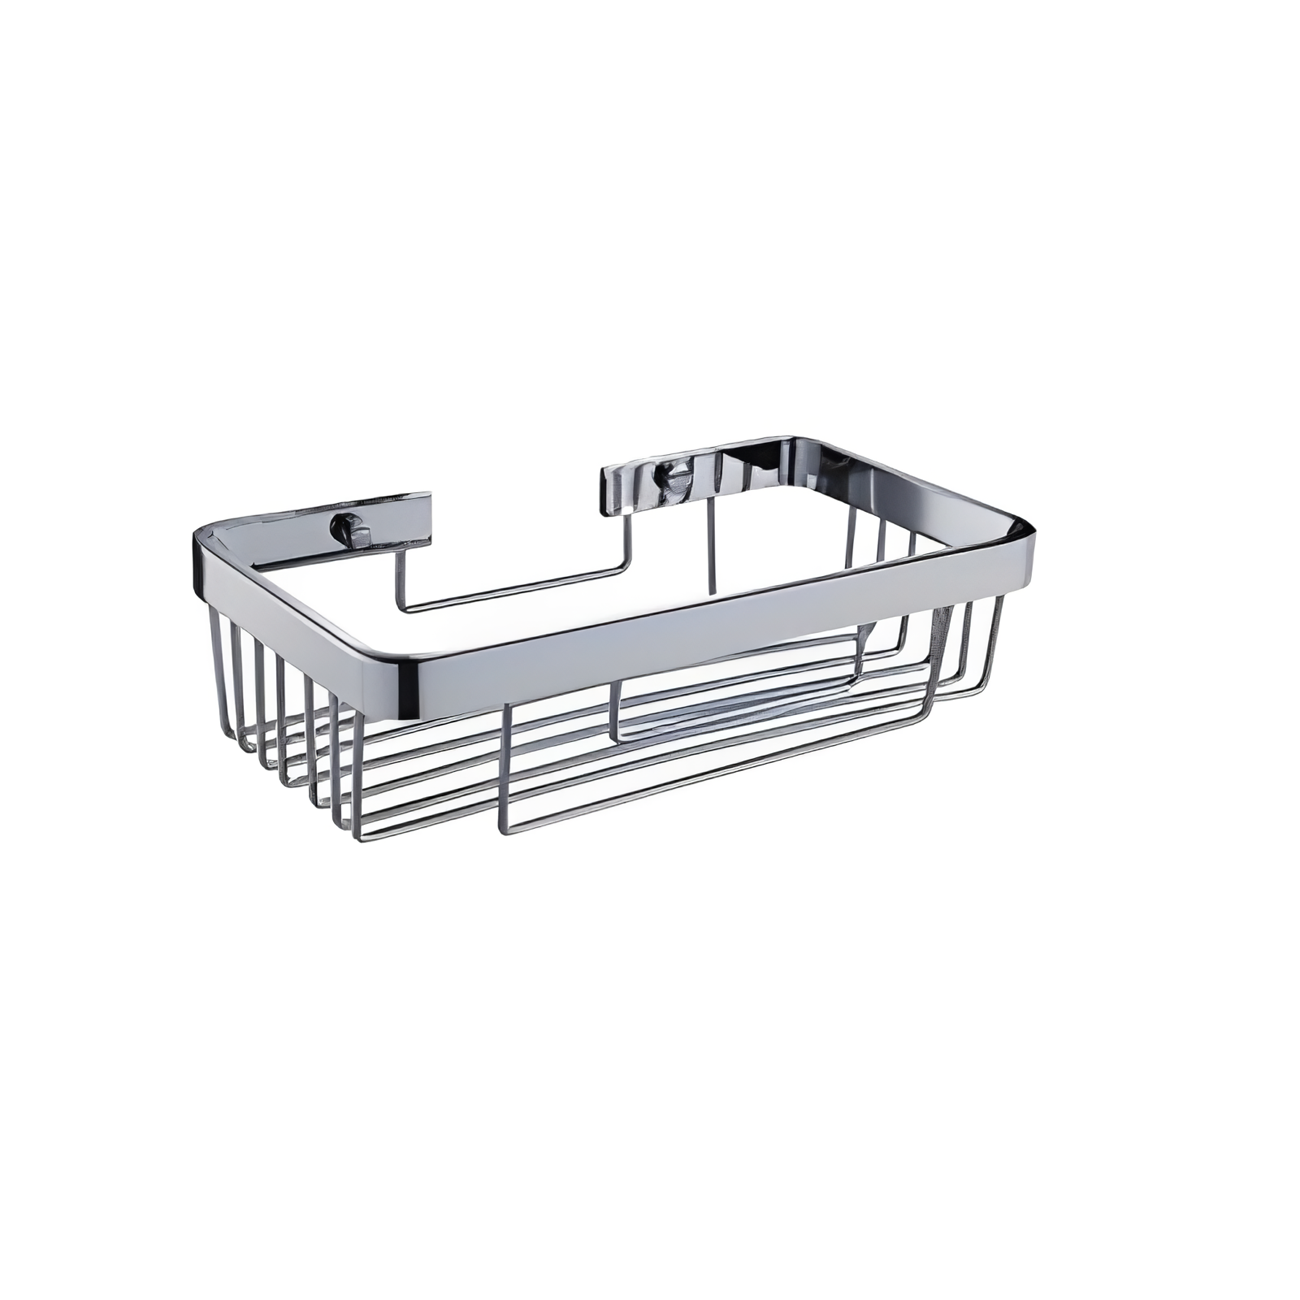 OJ-G3625L Shower Caddy Large Storage Shower Racks for Bathroom Wall Mounted Shower Holder Brass Bathroom Basket